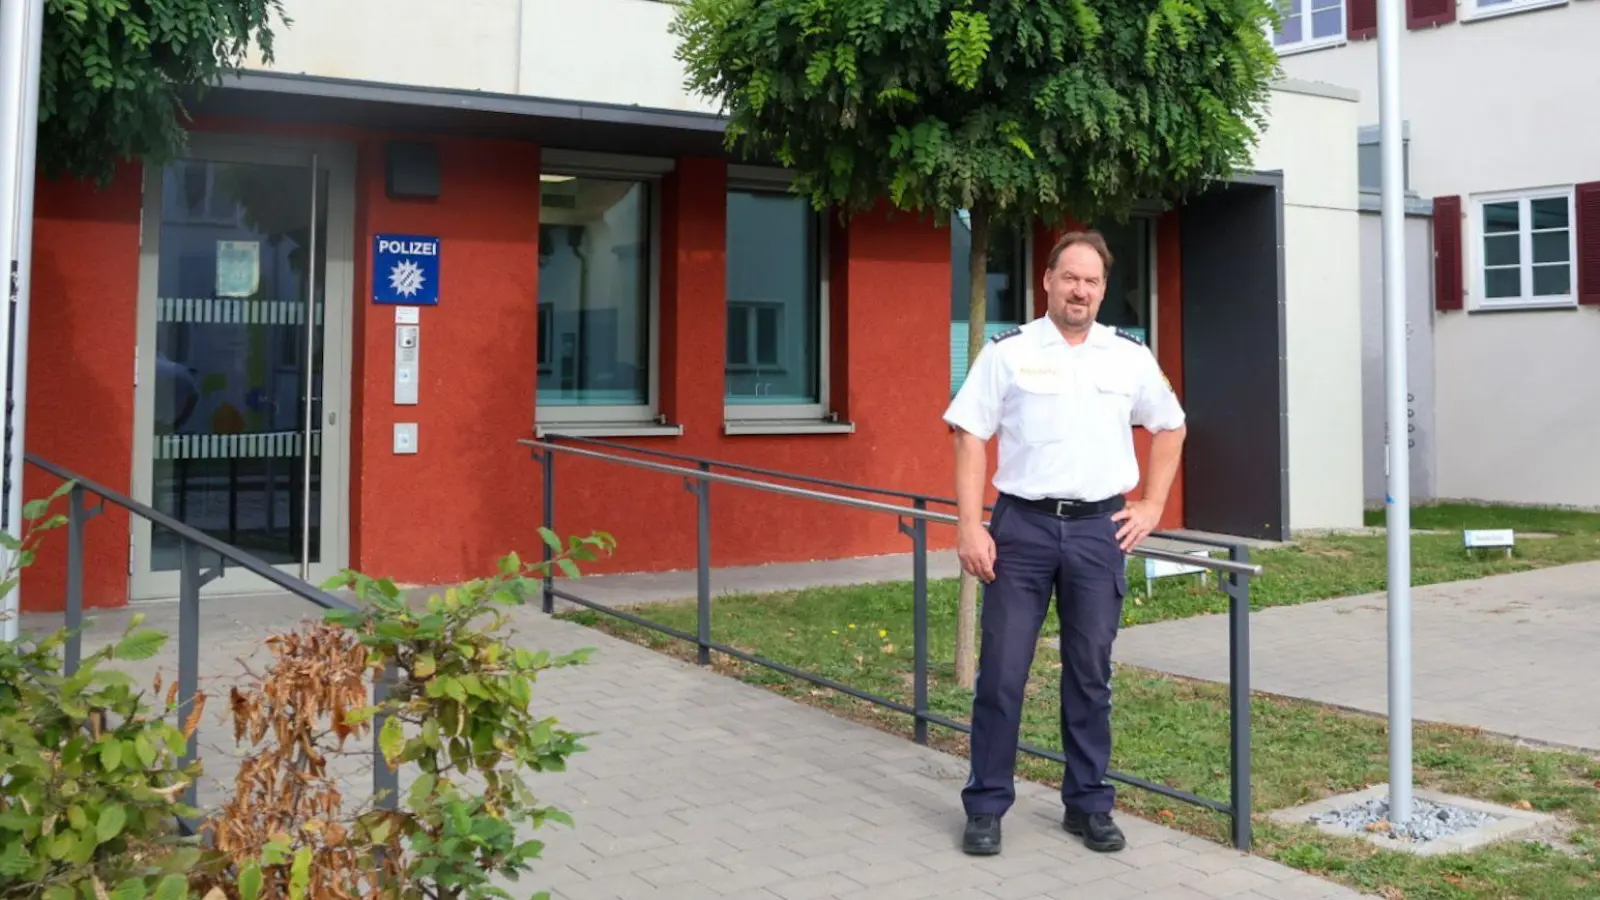 Peter Wack verlässt nach fünf Jahren seinen Posten als Leiter der Dinkelsbühler Polizeiinspektion. Der 54-Jährige wechselt zur Kripo nach Ansbach. (Foto: Martina Haas)